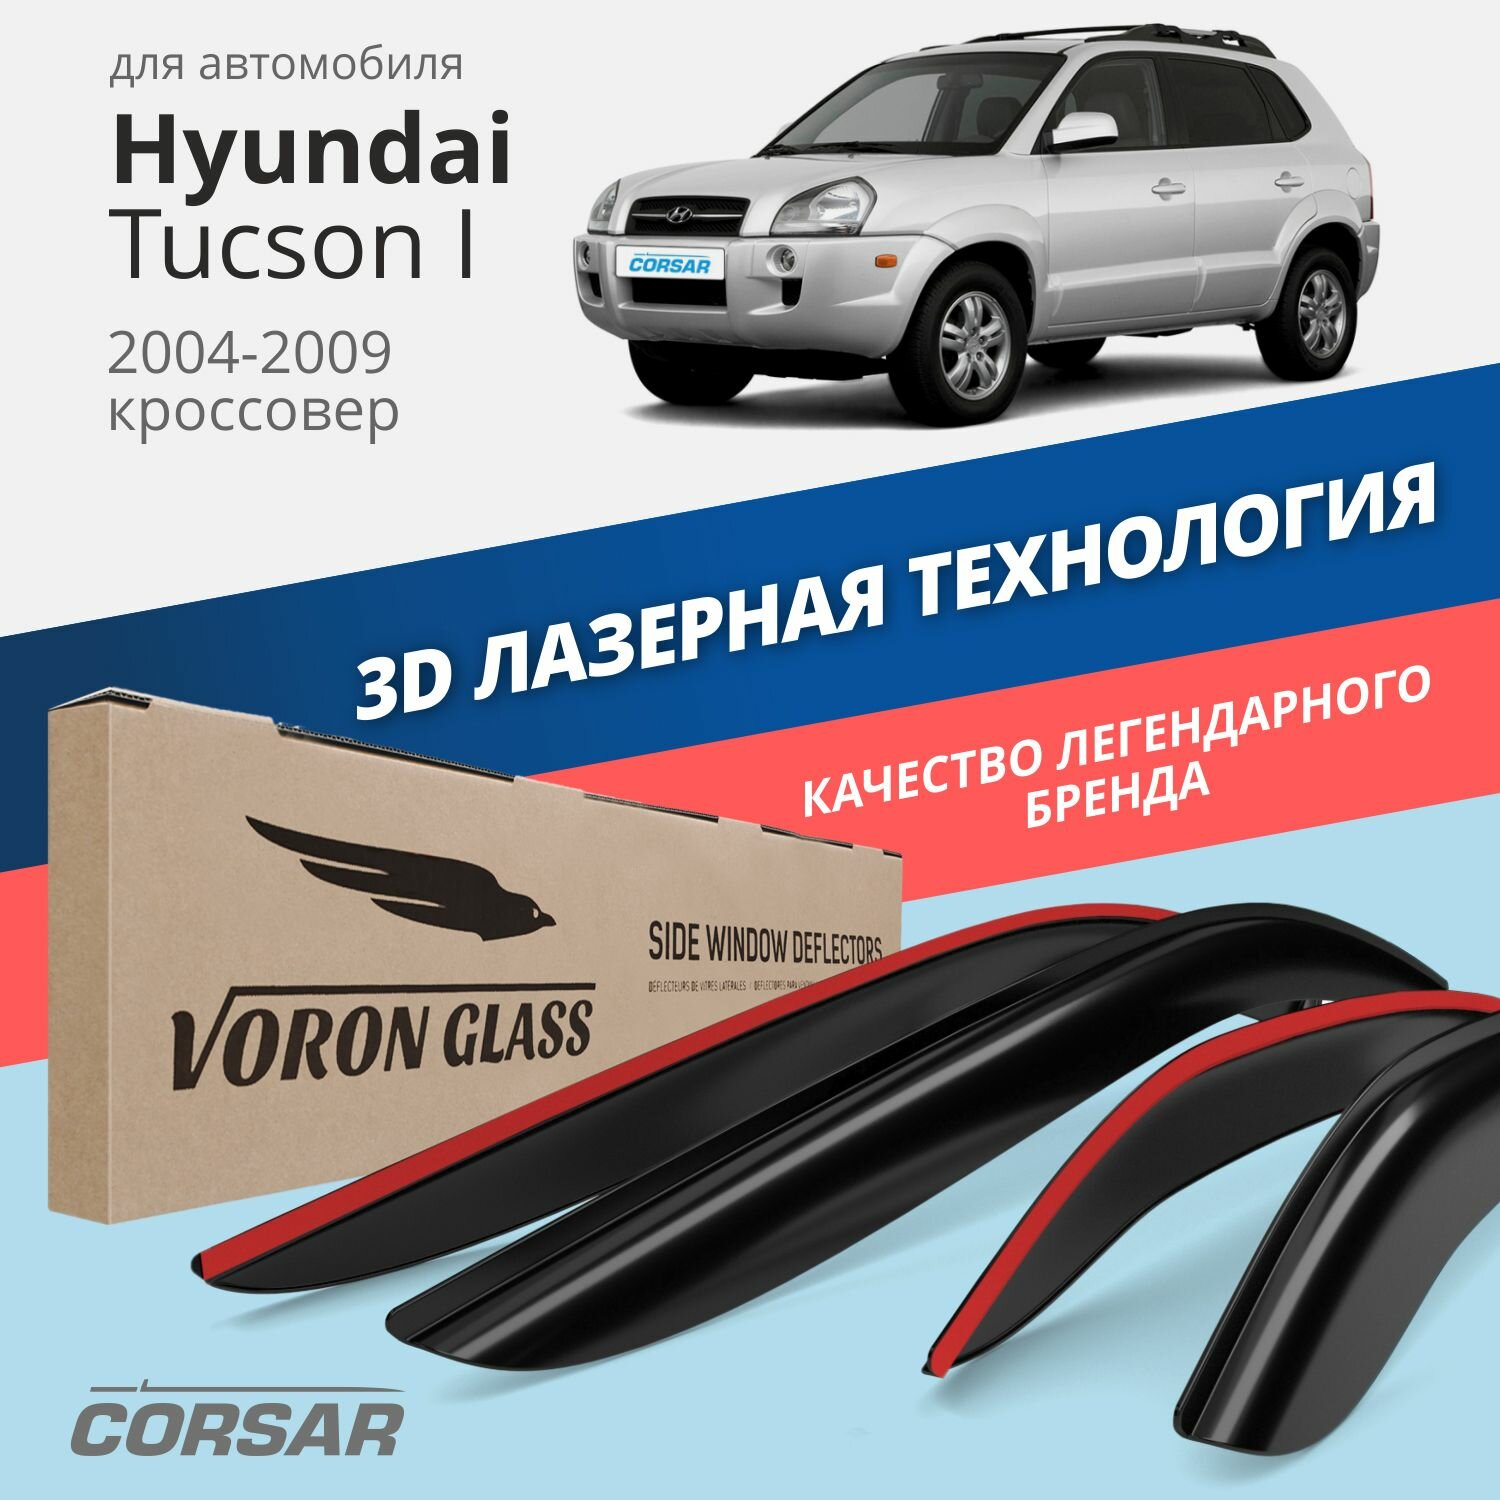 Дефлекторы окон Voron Glass серия Corsar для Hyundai Tucson I 2004-2009 накладные 4 шт.